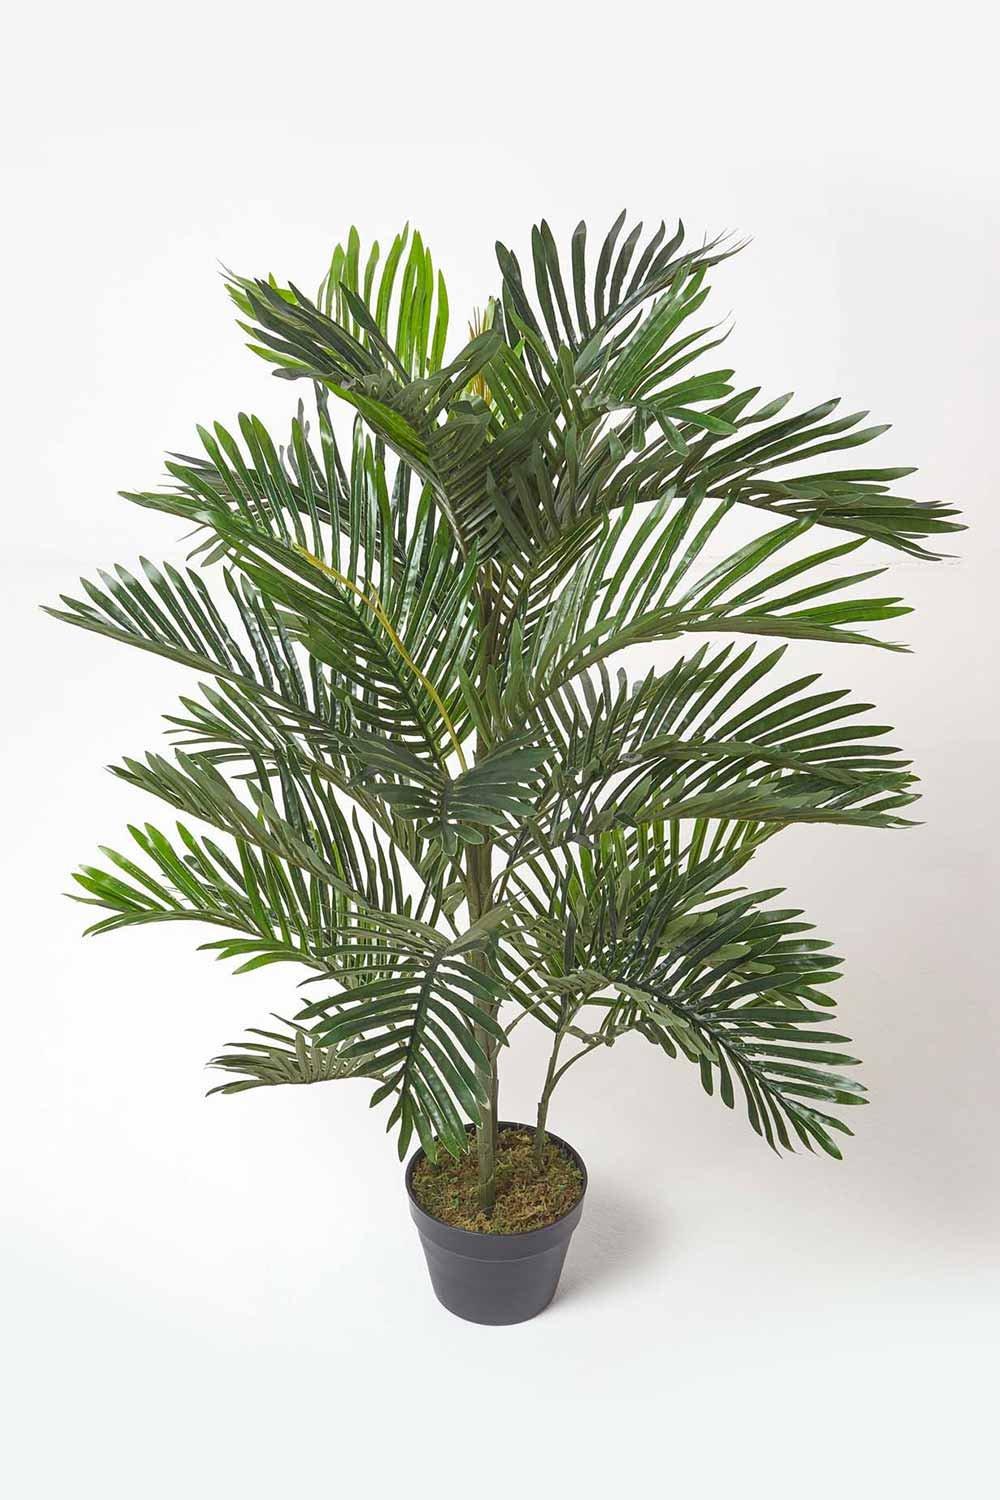 Multi Stem Green Palm Tree in Pot, 120 cm